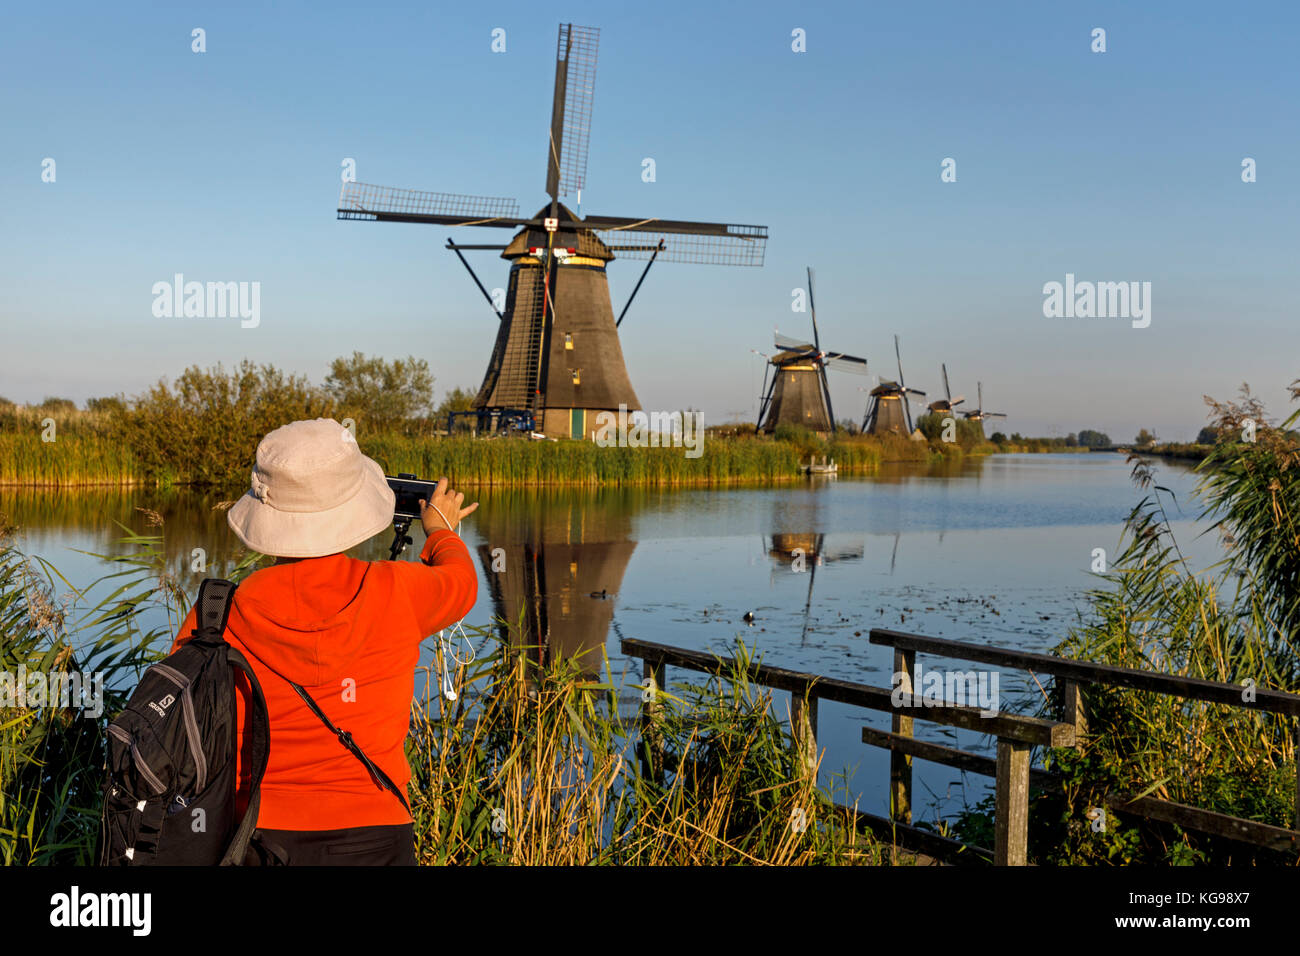 Mulini a vento storico, sito patrimonio mondiale dell'unesco, kinderdijk, sud dei Paesi Bassi, Netherland, europa Foto Stock